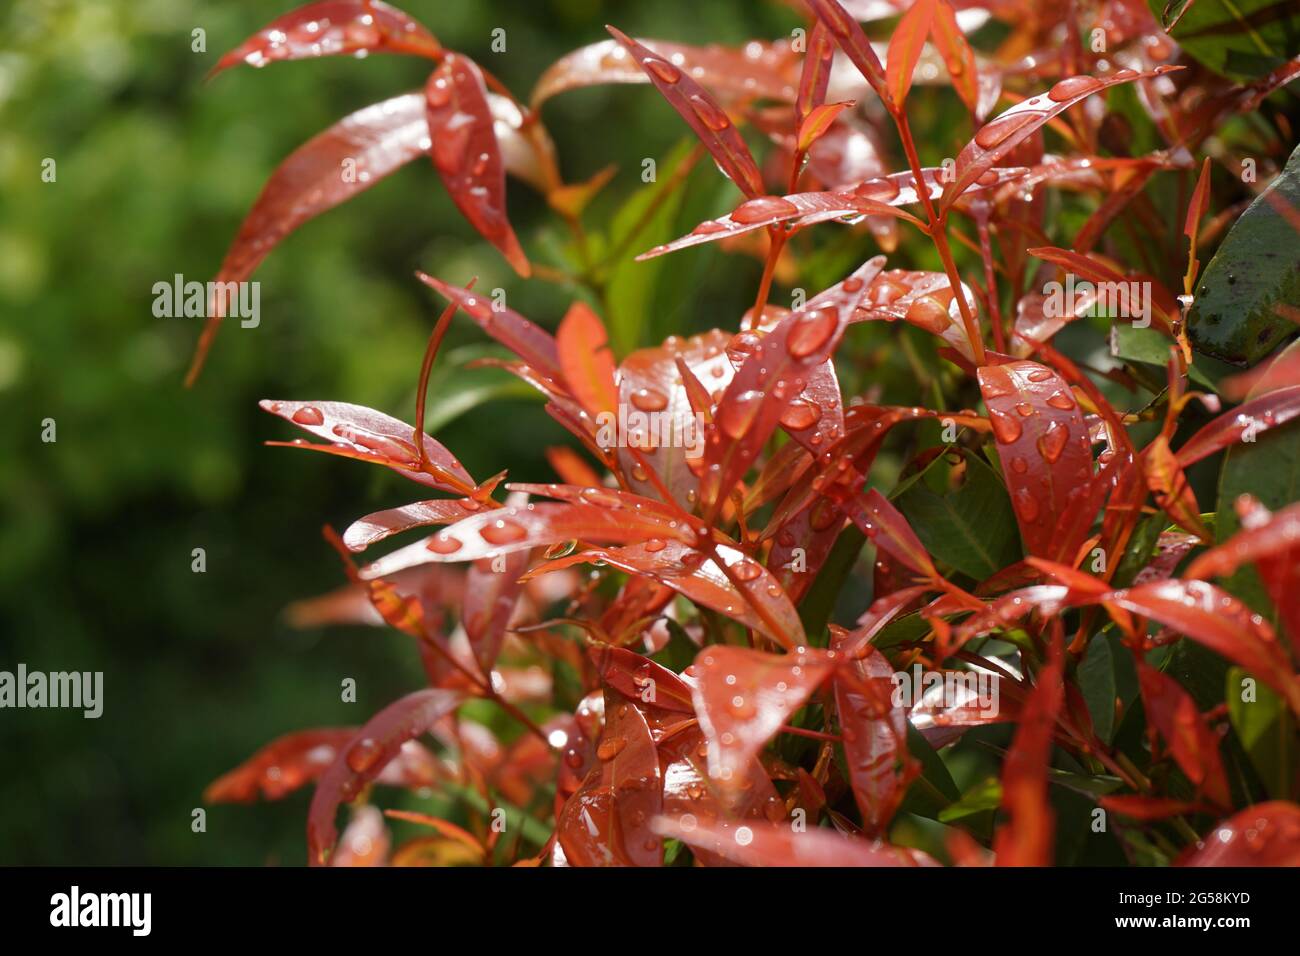 Syzygium oleina in the nature. This plant also Syzygium oleina, pucuk merah, daun pucuk merah, and Syzygium myrtifolium Stock Photo